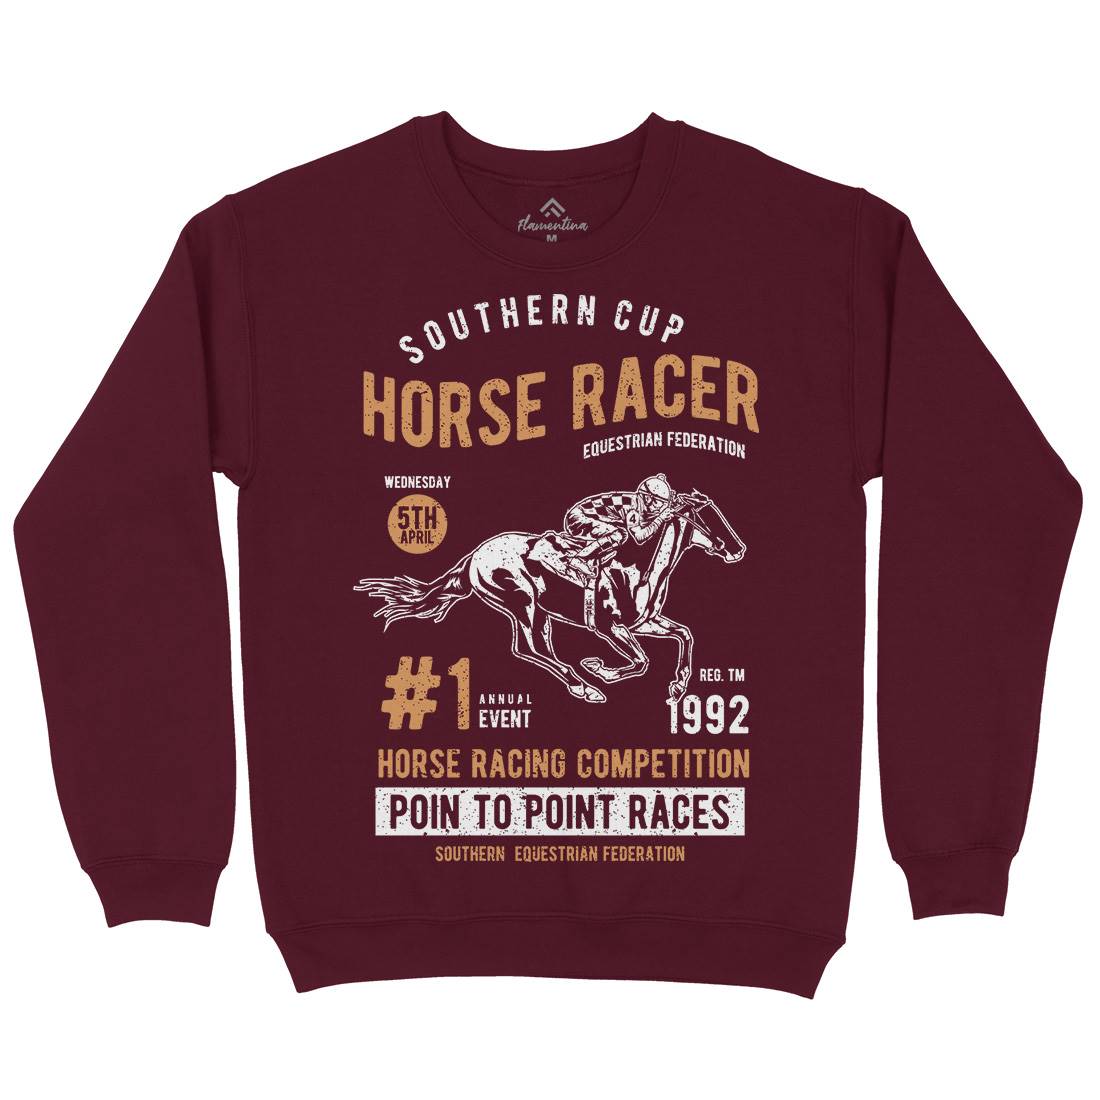 Horse Racer Kids Crew Neck Sweatshirt Sport A686